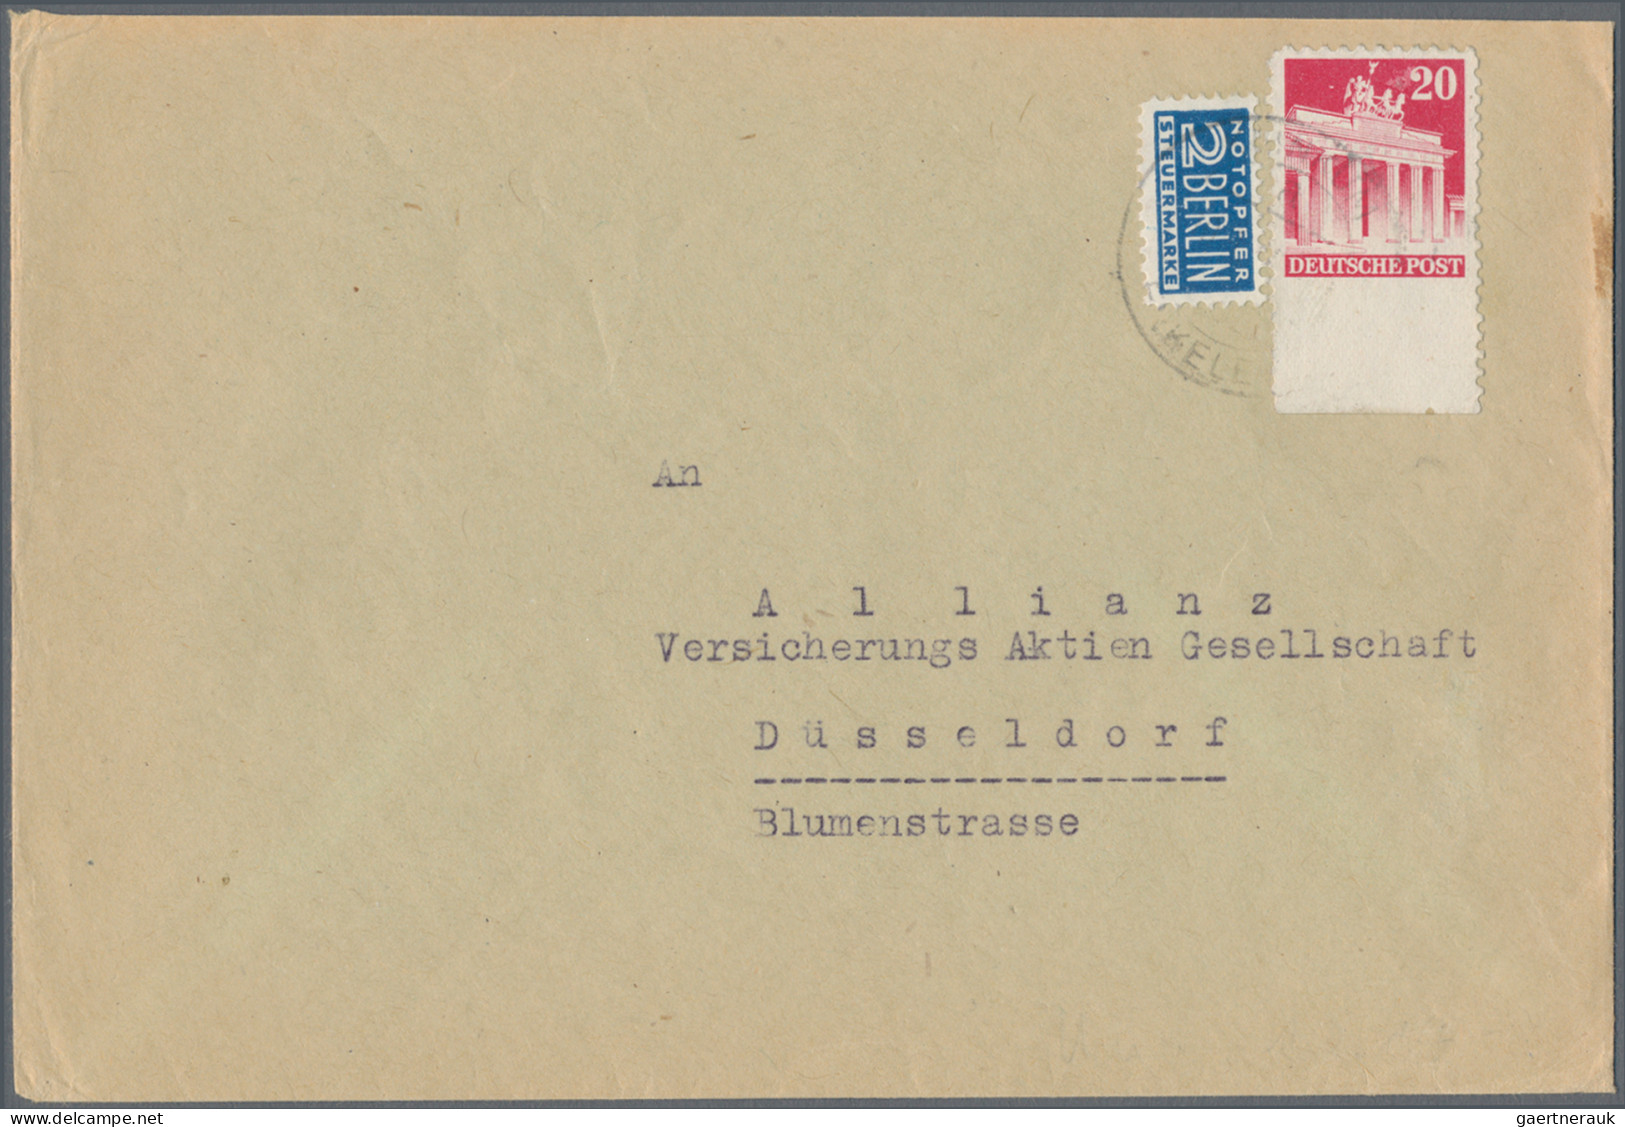 Bizone: 1948/1953, Bauten, Partie von ca. 140 Briefen und Karten, praktisch alle